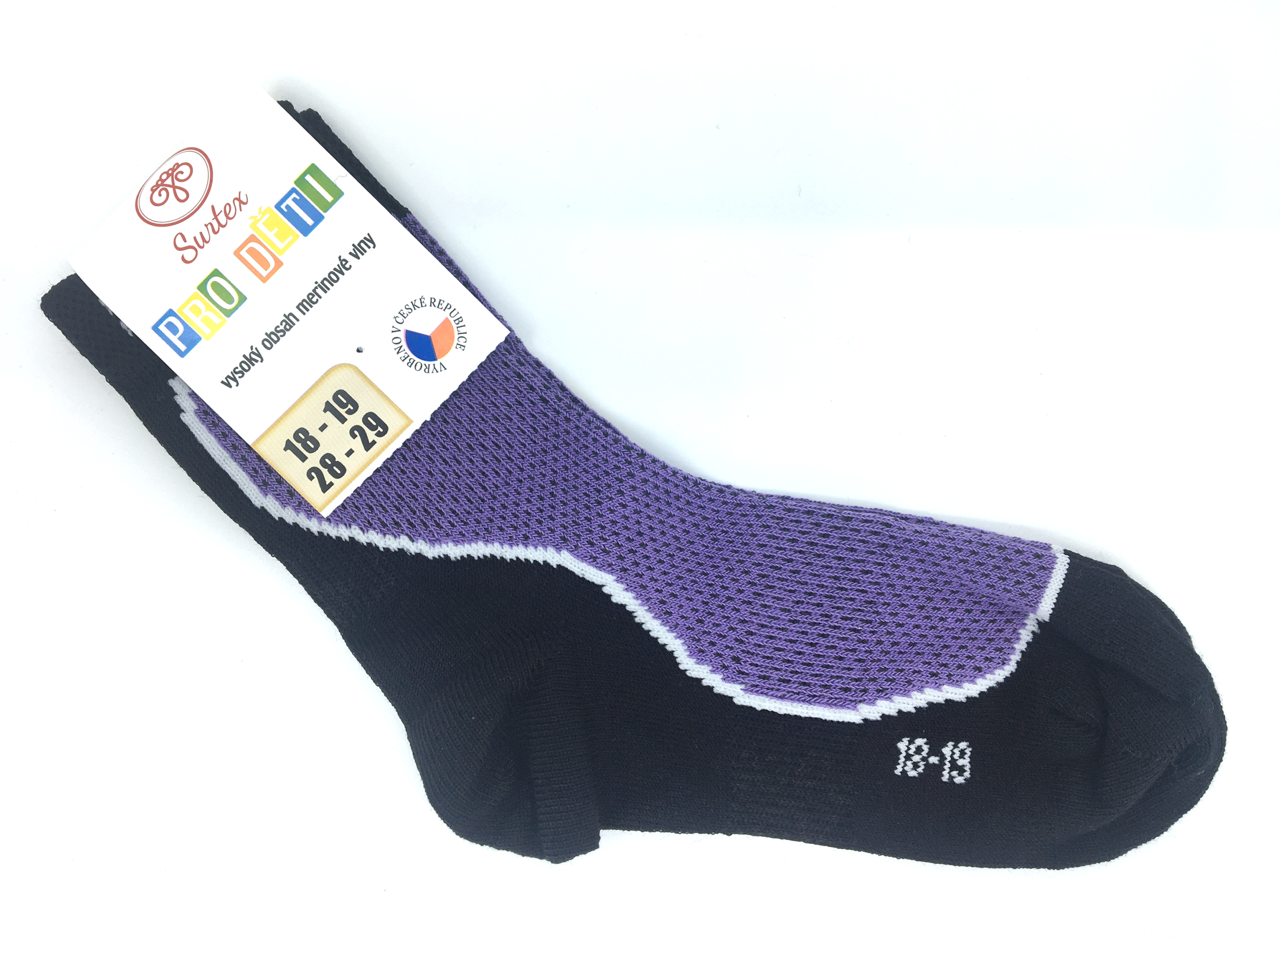 Ponožky Surtex 50% Merino Fialové Velikost: 34 - 35